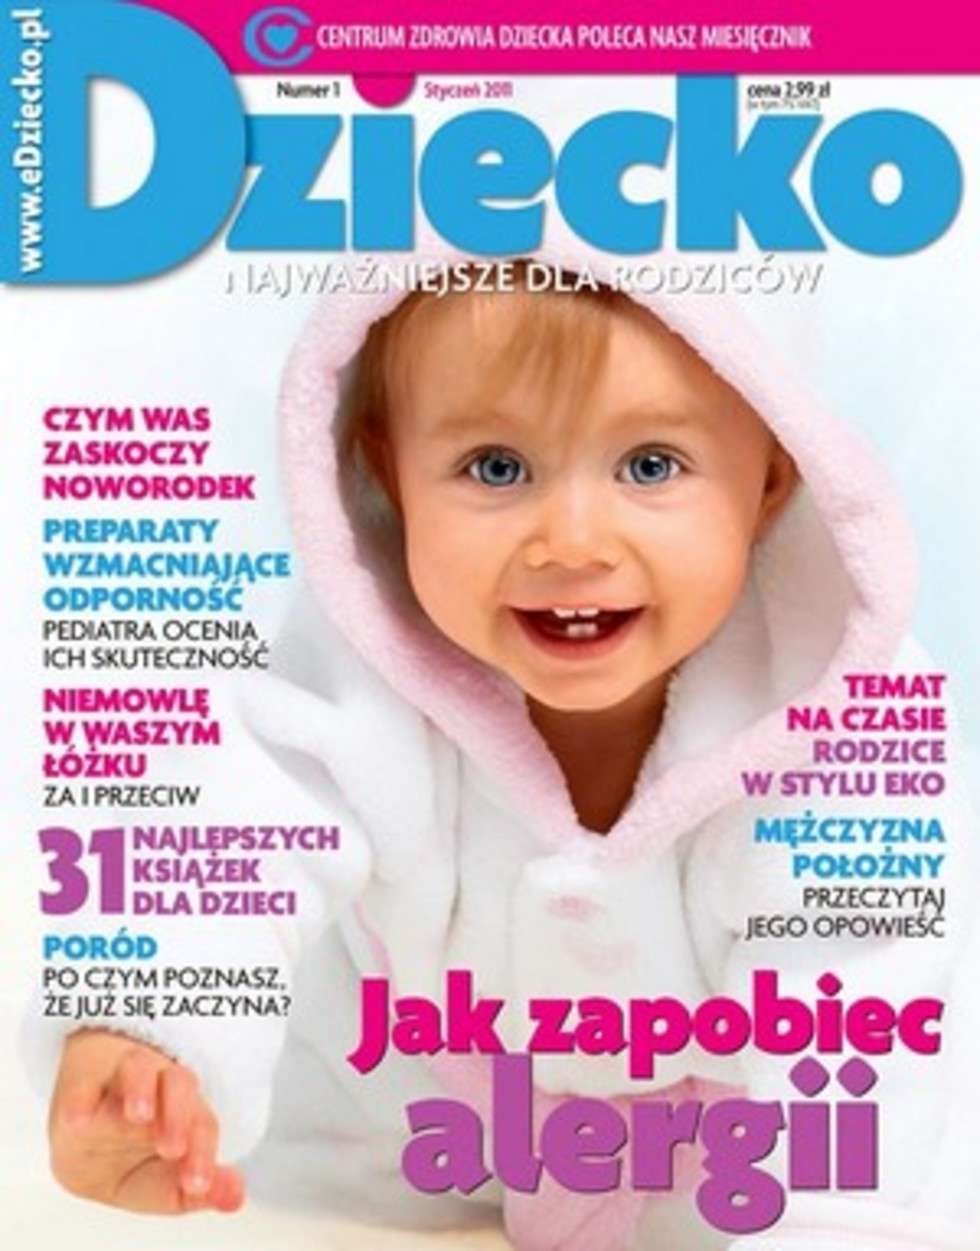  Popularne Czasopisma Poradnicze dla Kobiet III miejsce: "Dziecko najważniejsze dla rodziców" nr 01/2011